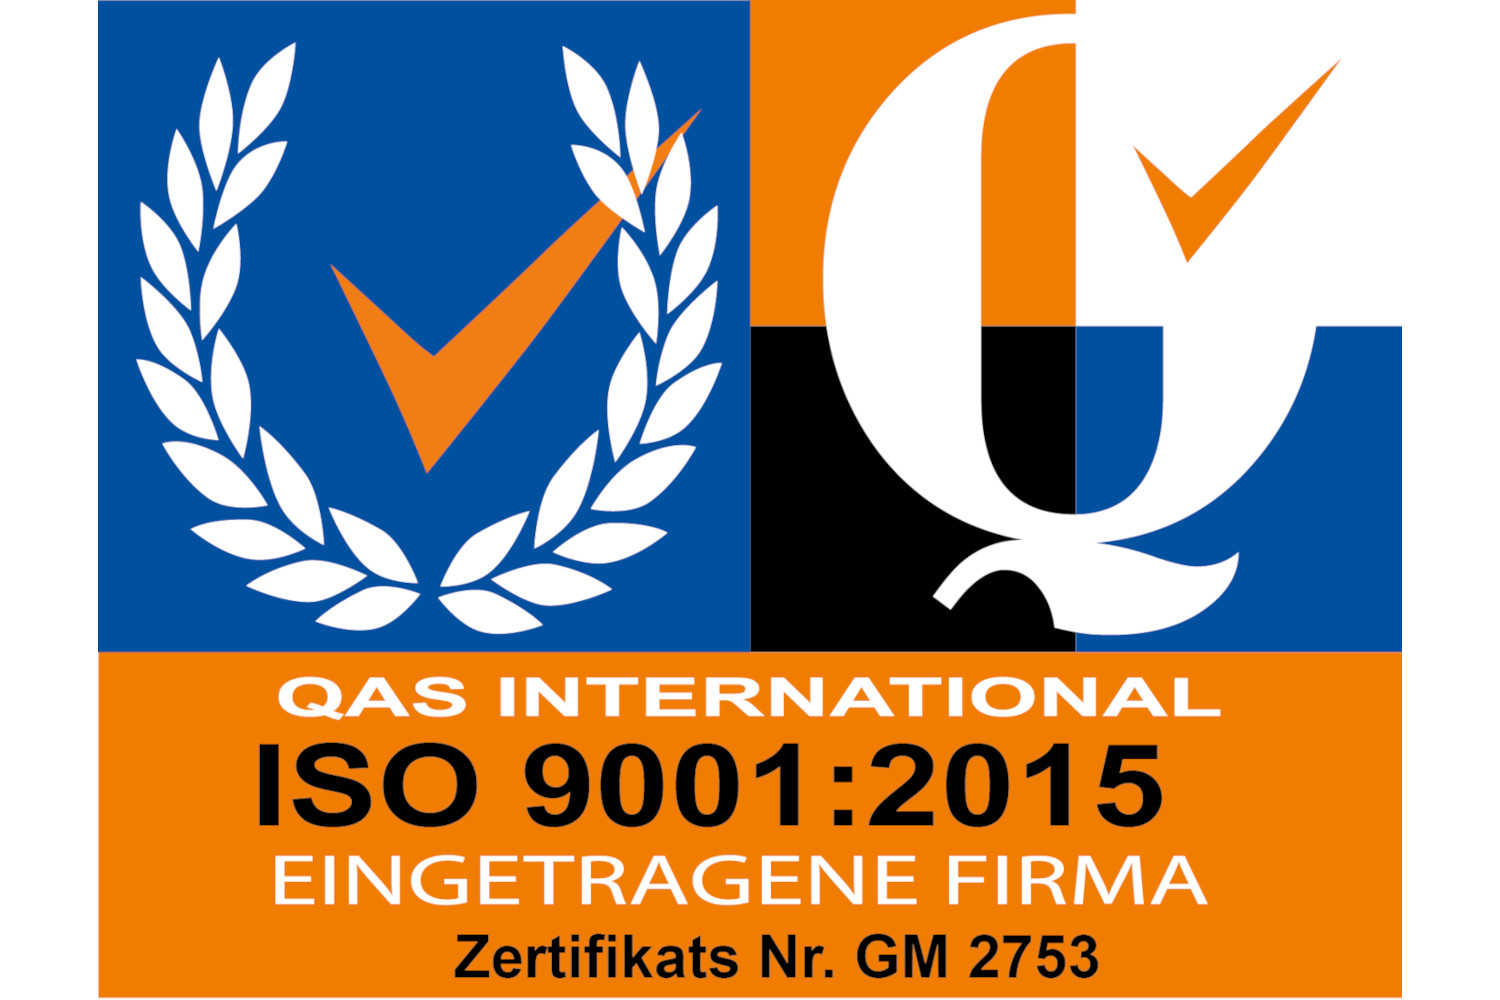 spo-comm goes ISO 9001:2015 certification!